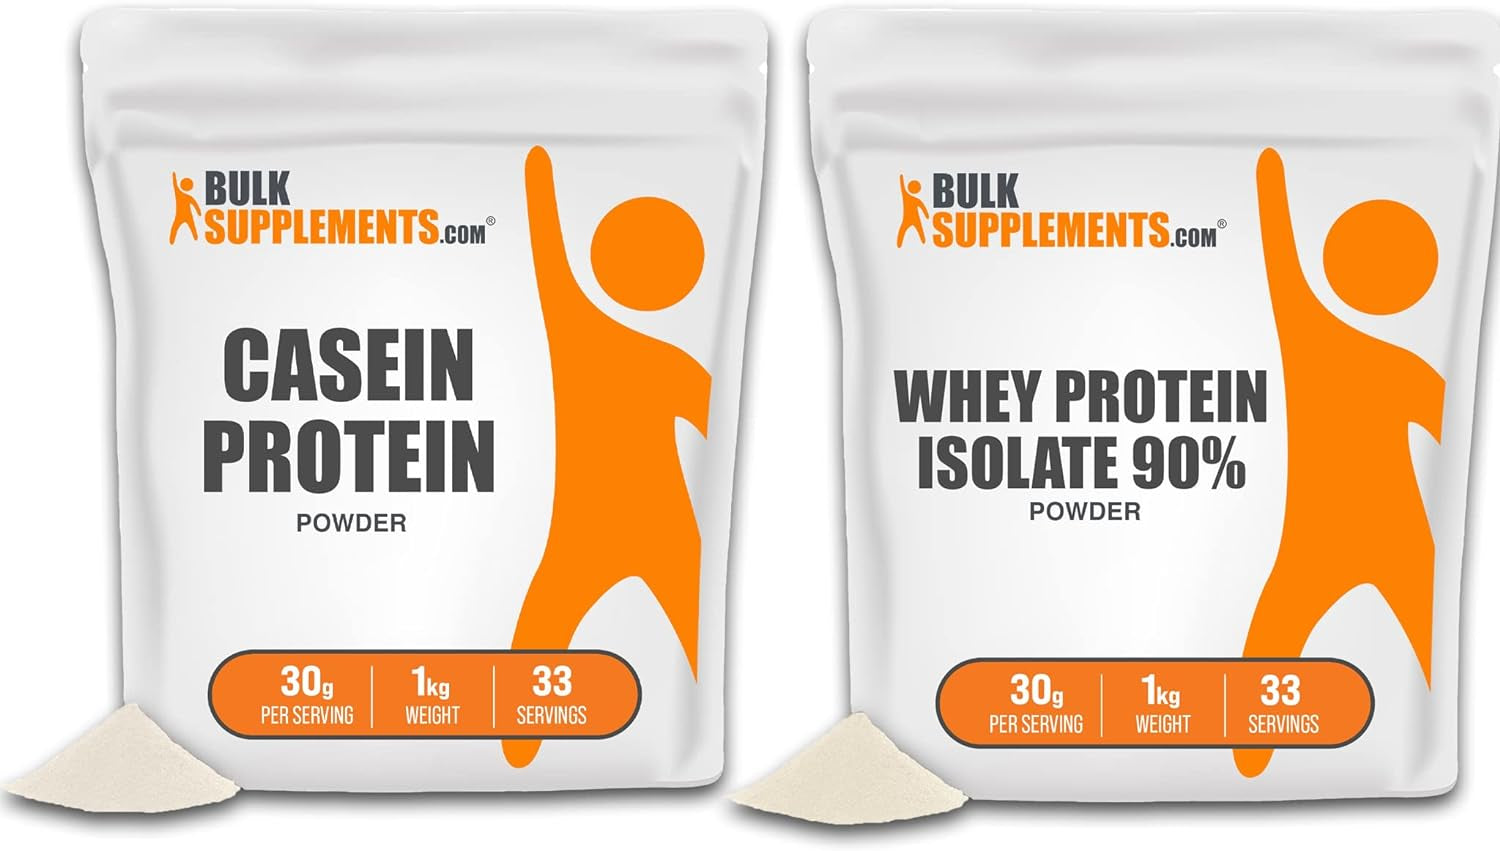 BULKSUPPLEMENTS.COM Casein Protein Powder 1KG & Whey Protein Isolate Powder 1KG Bundle